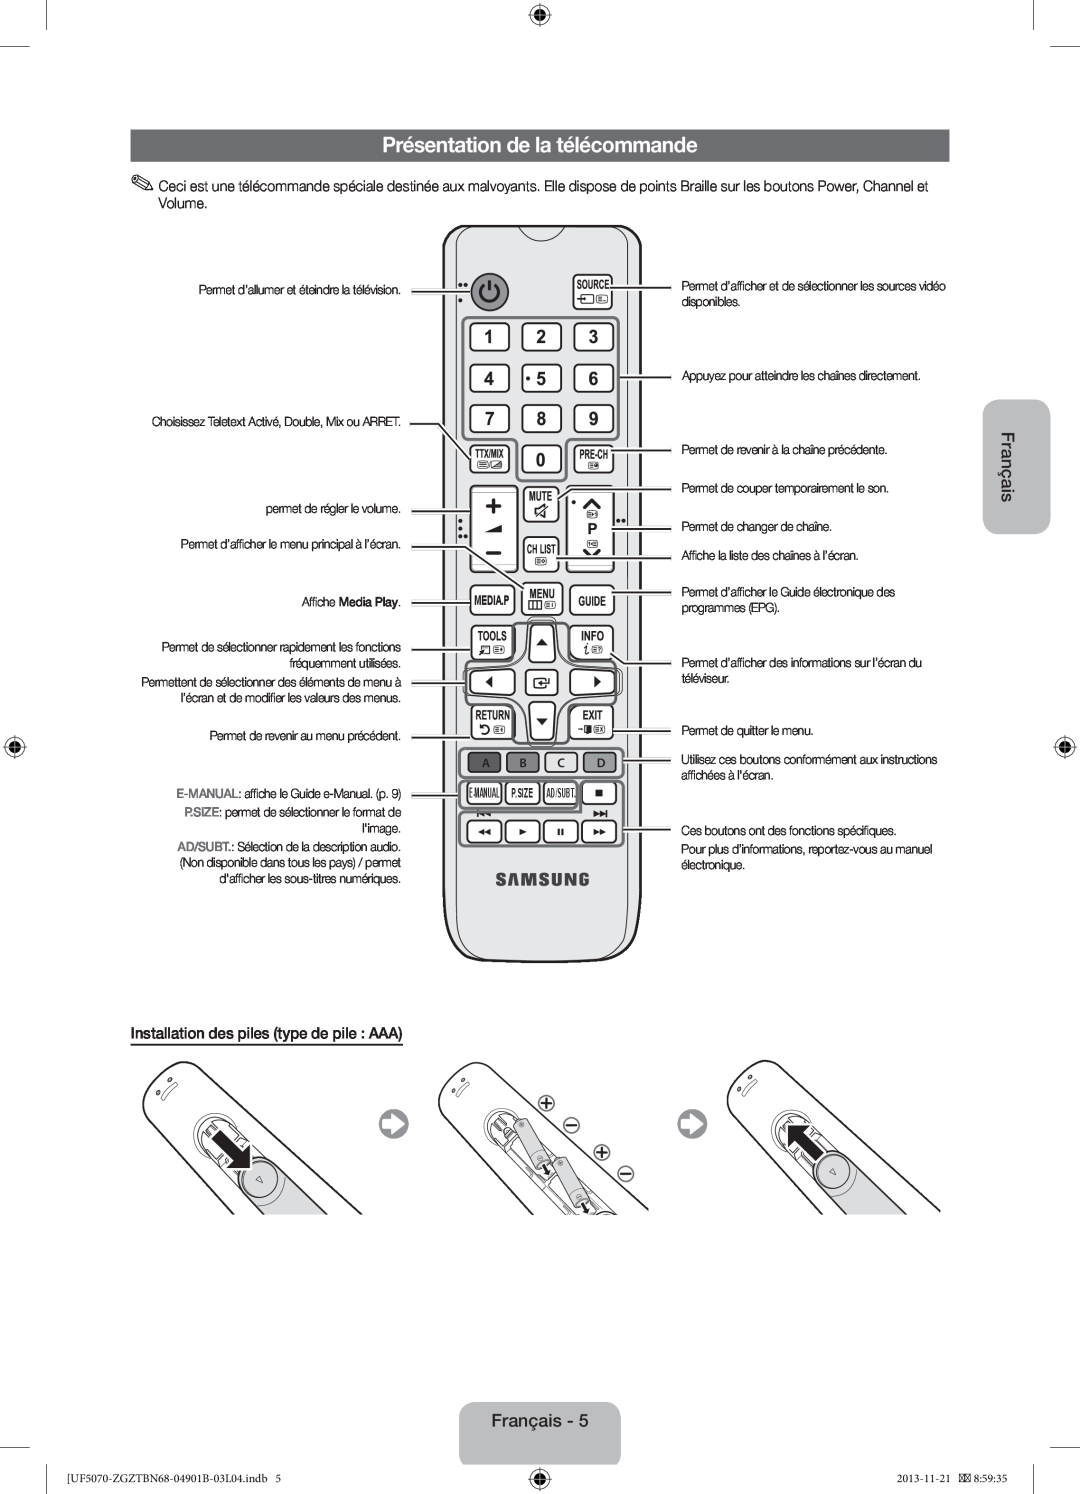 Samsung UE46F5000AWXZF, UE46F5000AWXXH Présentation de la télécommande, Installation des piles type de pile AAA, Français 